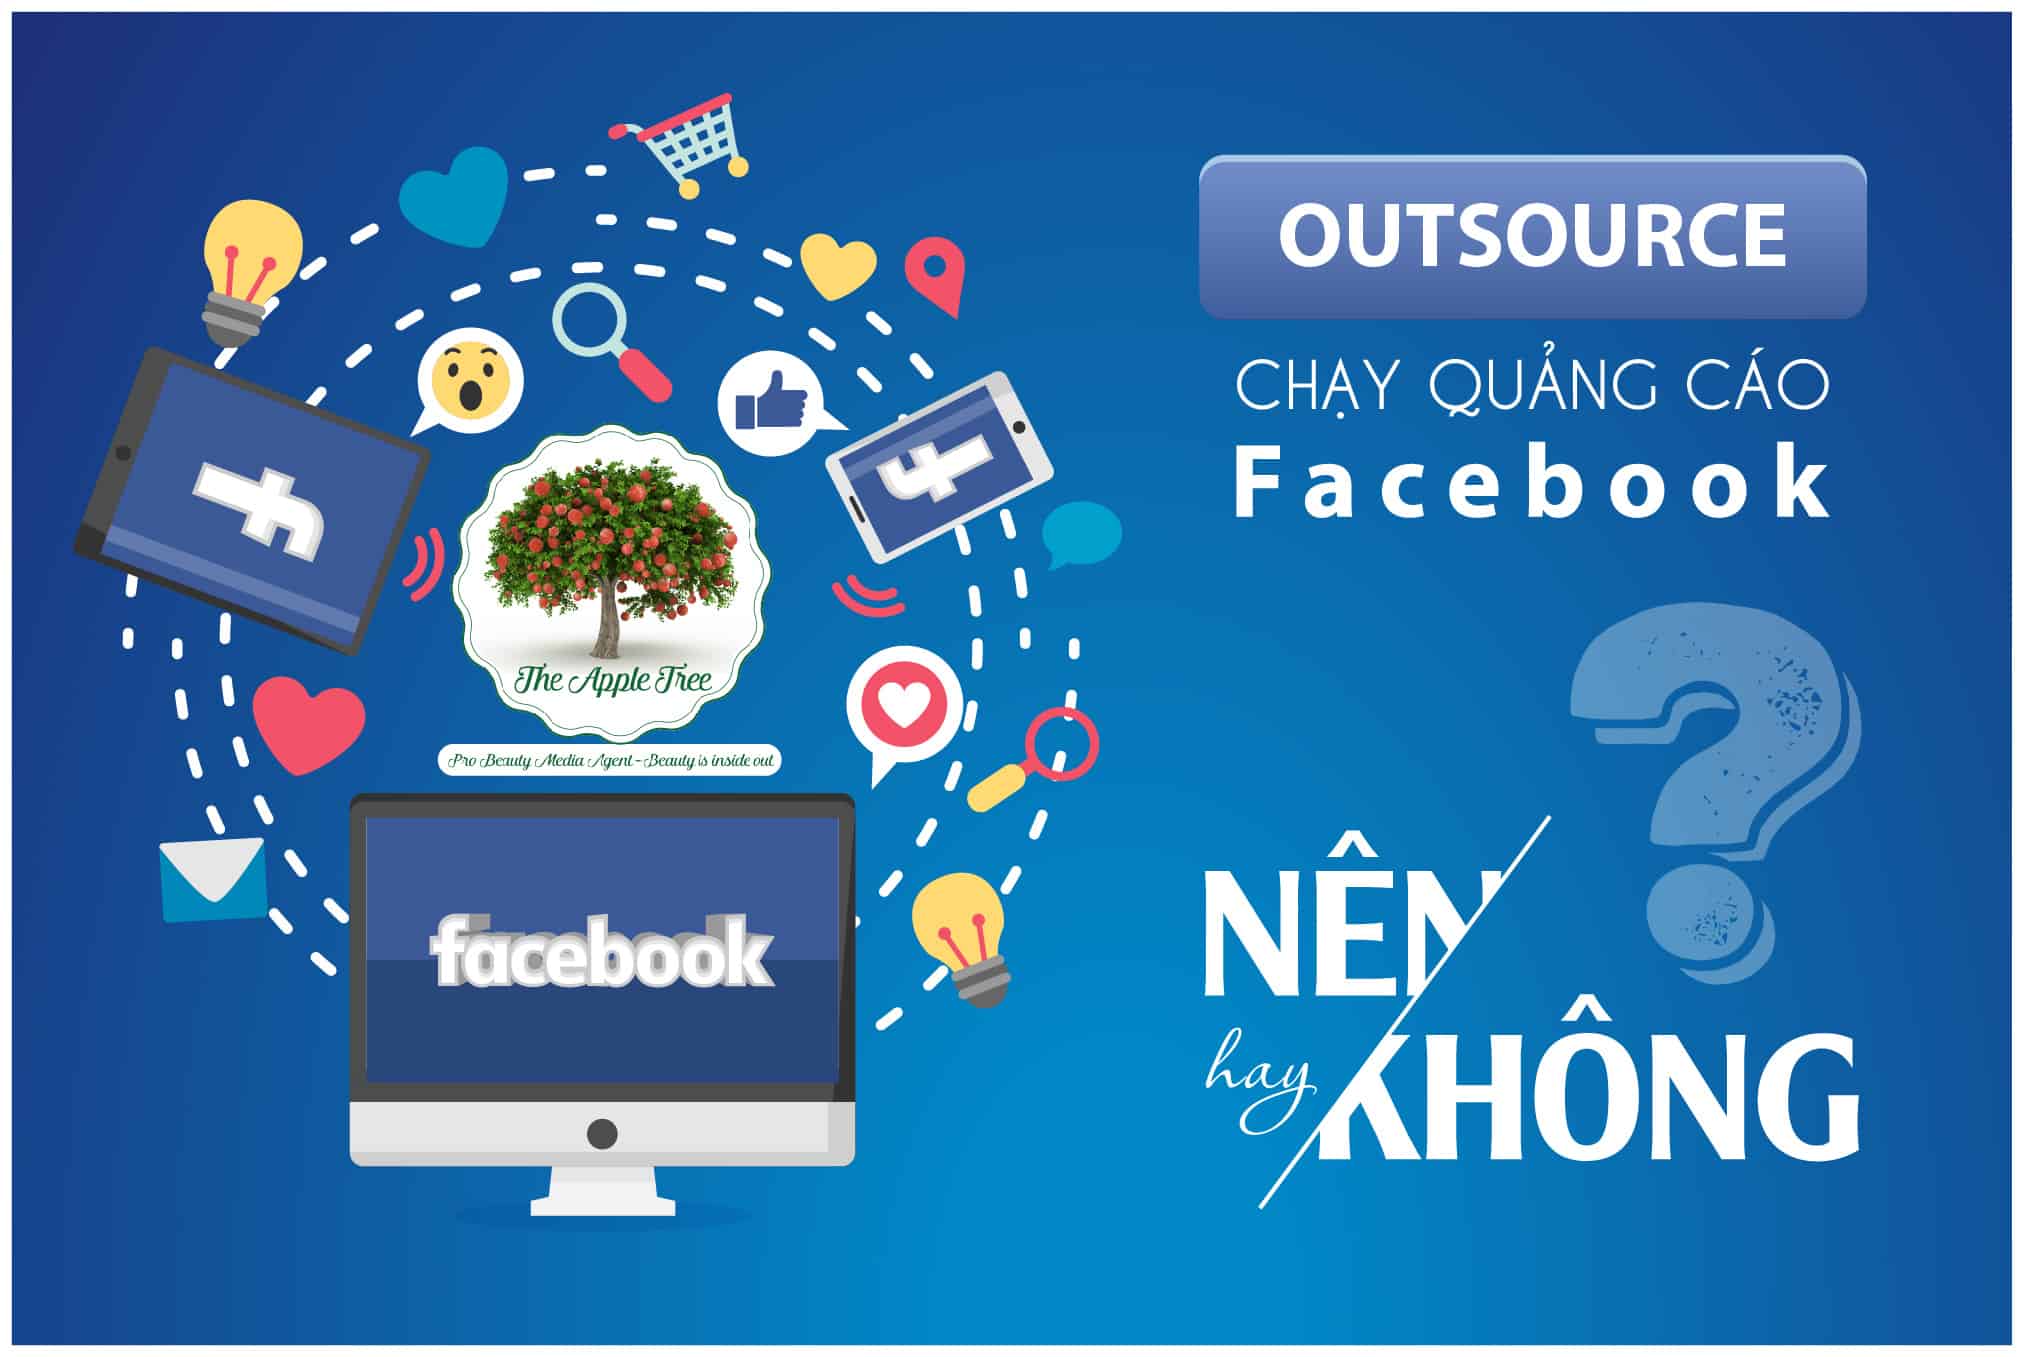 75% người dùng Facebook tại Việt Nam có độ tuổi từ 18-34. Rất thích hợp cho quảng cáo sản phẩm.